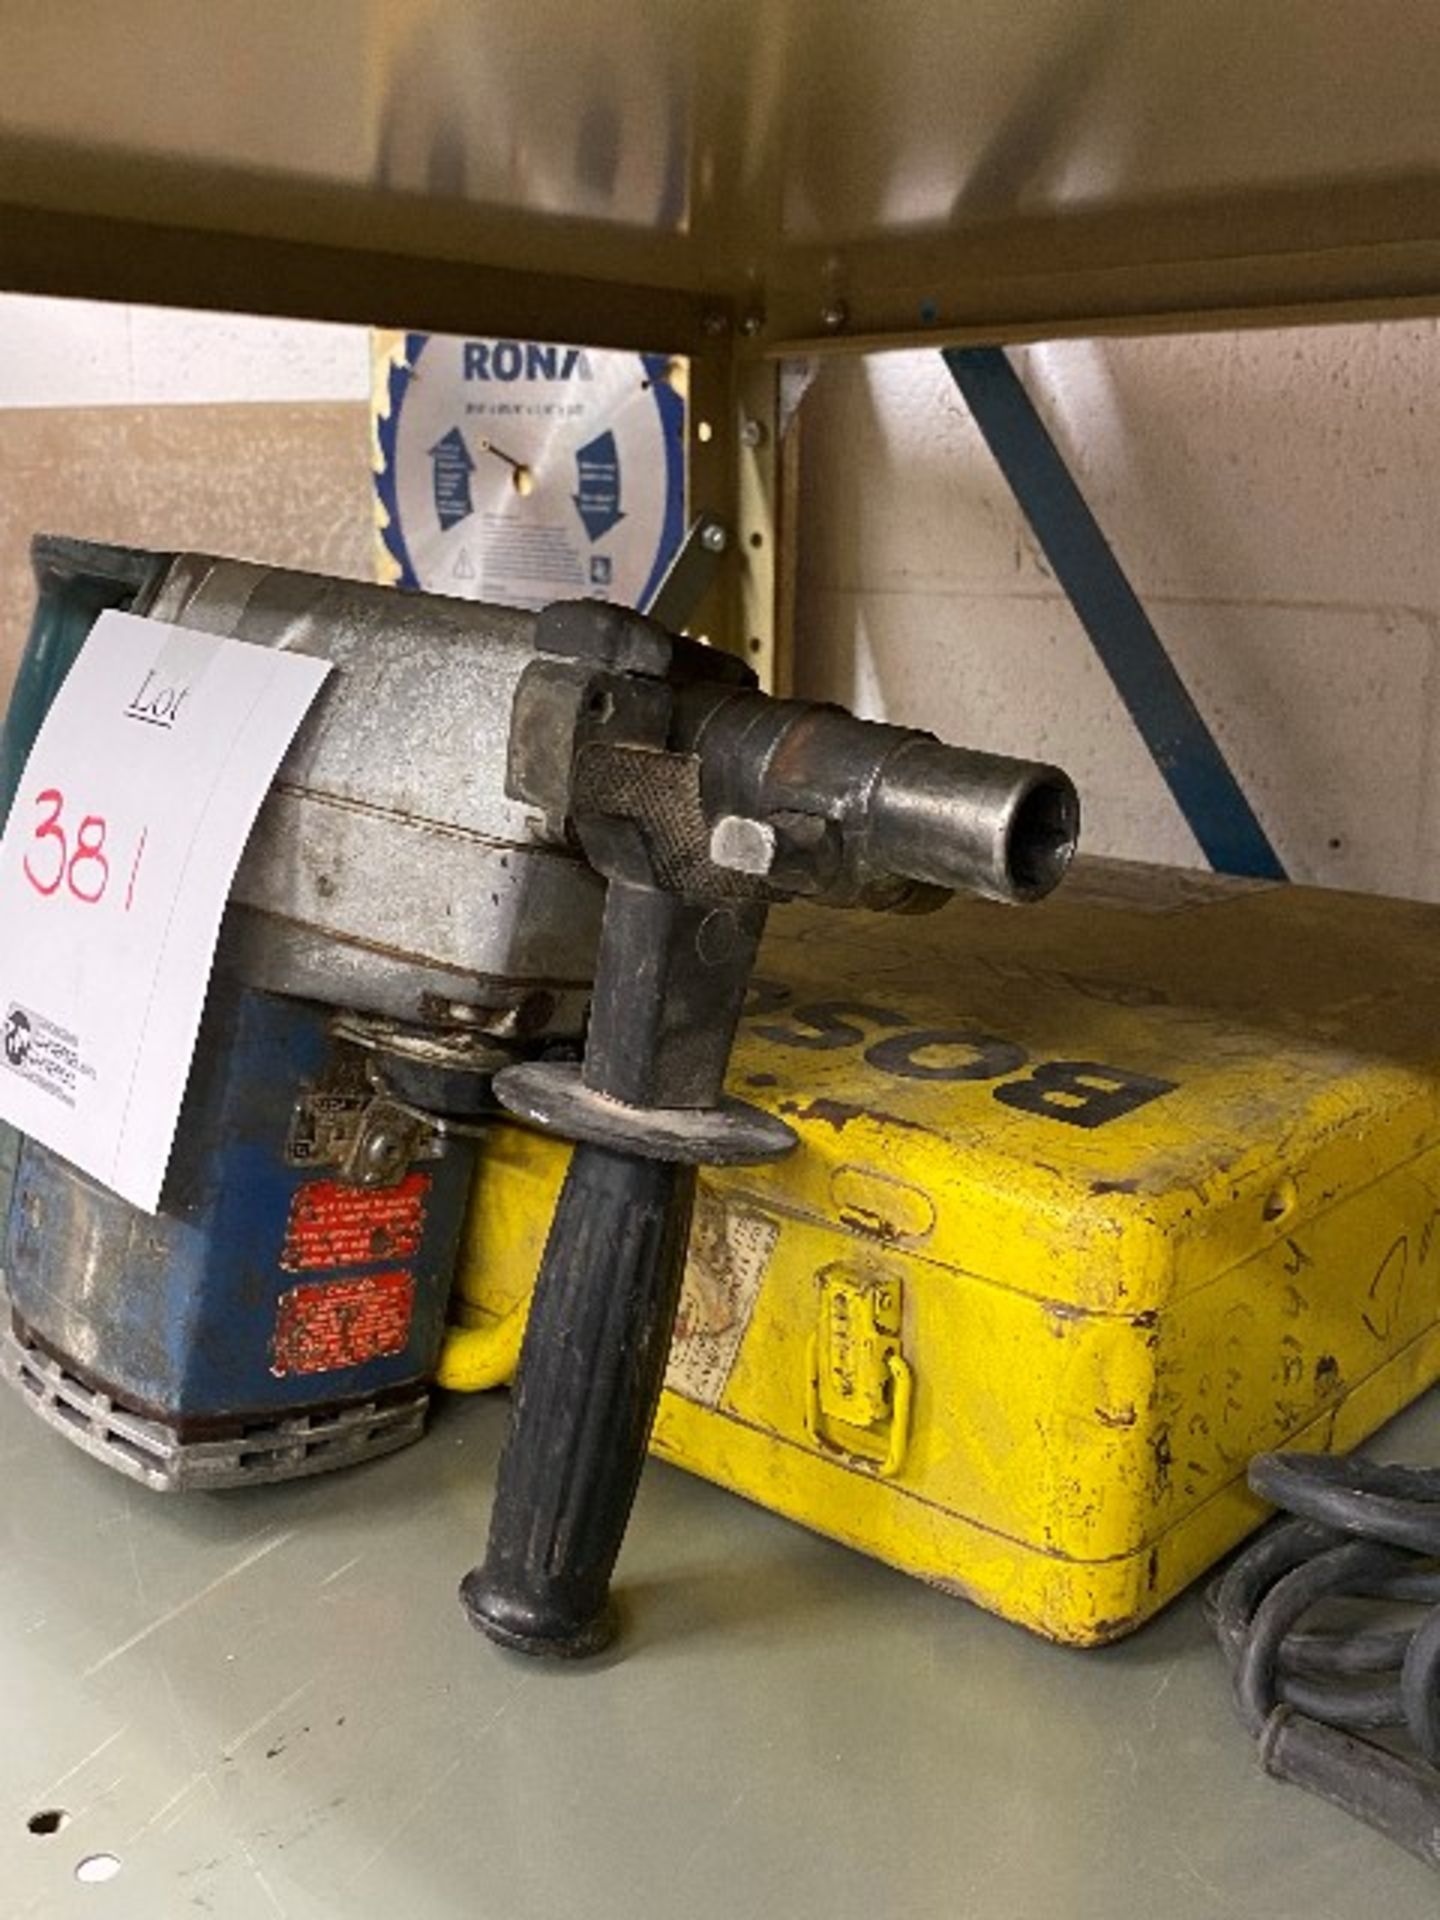 Bosch heavy duty rotary hammer drill - Image 2 of 2